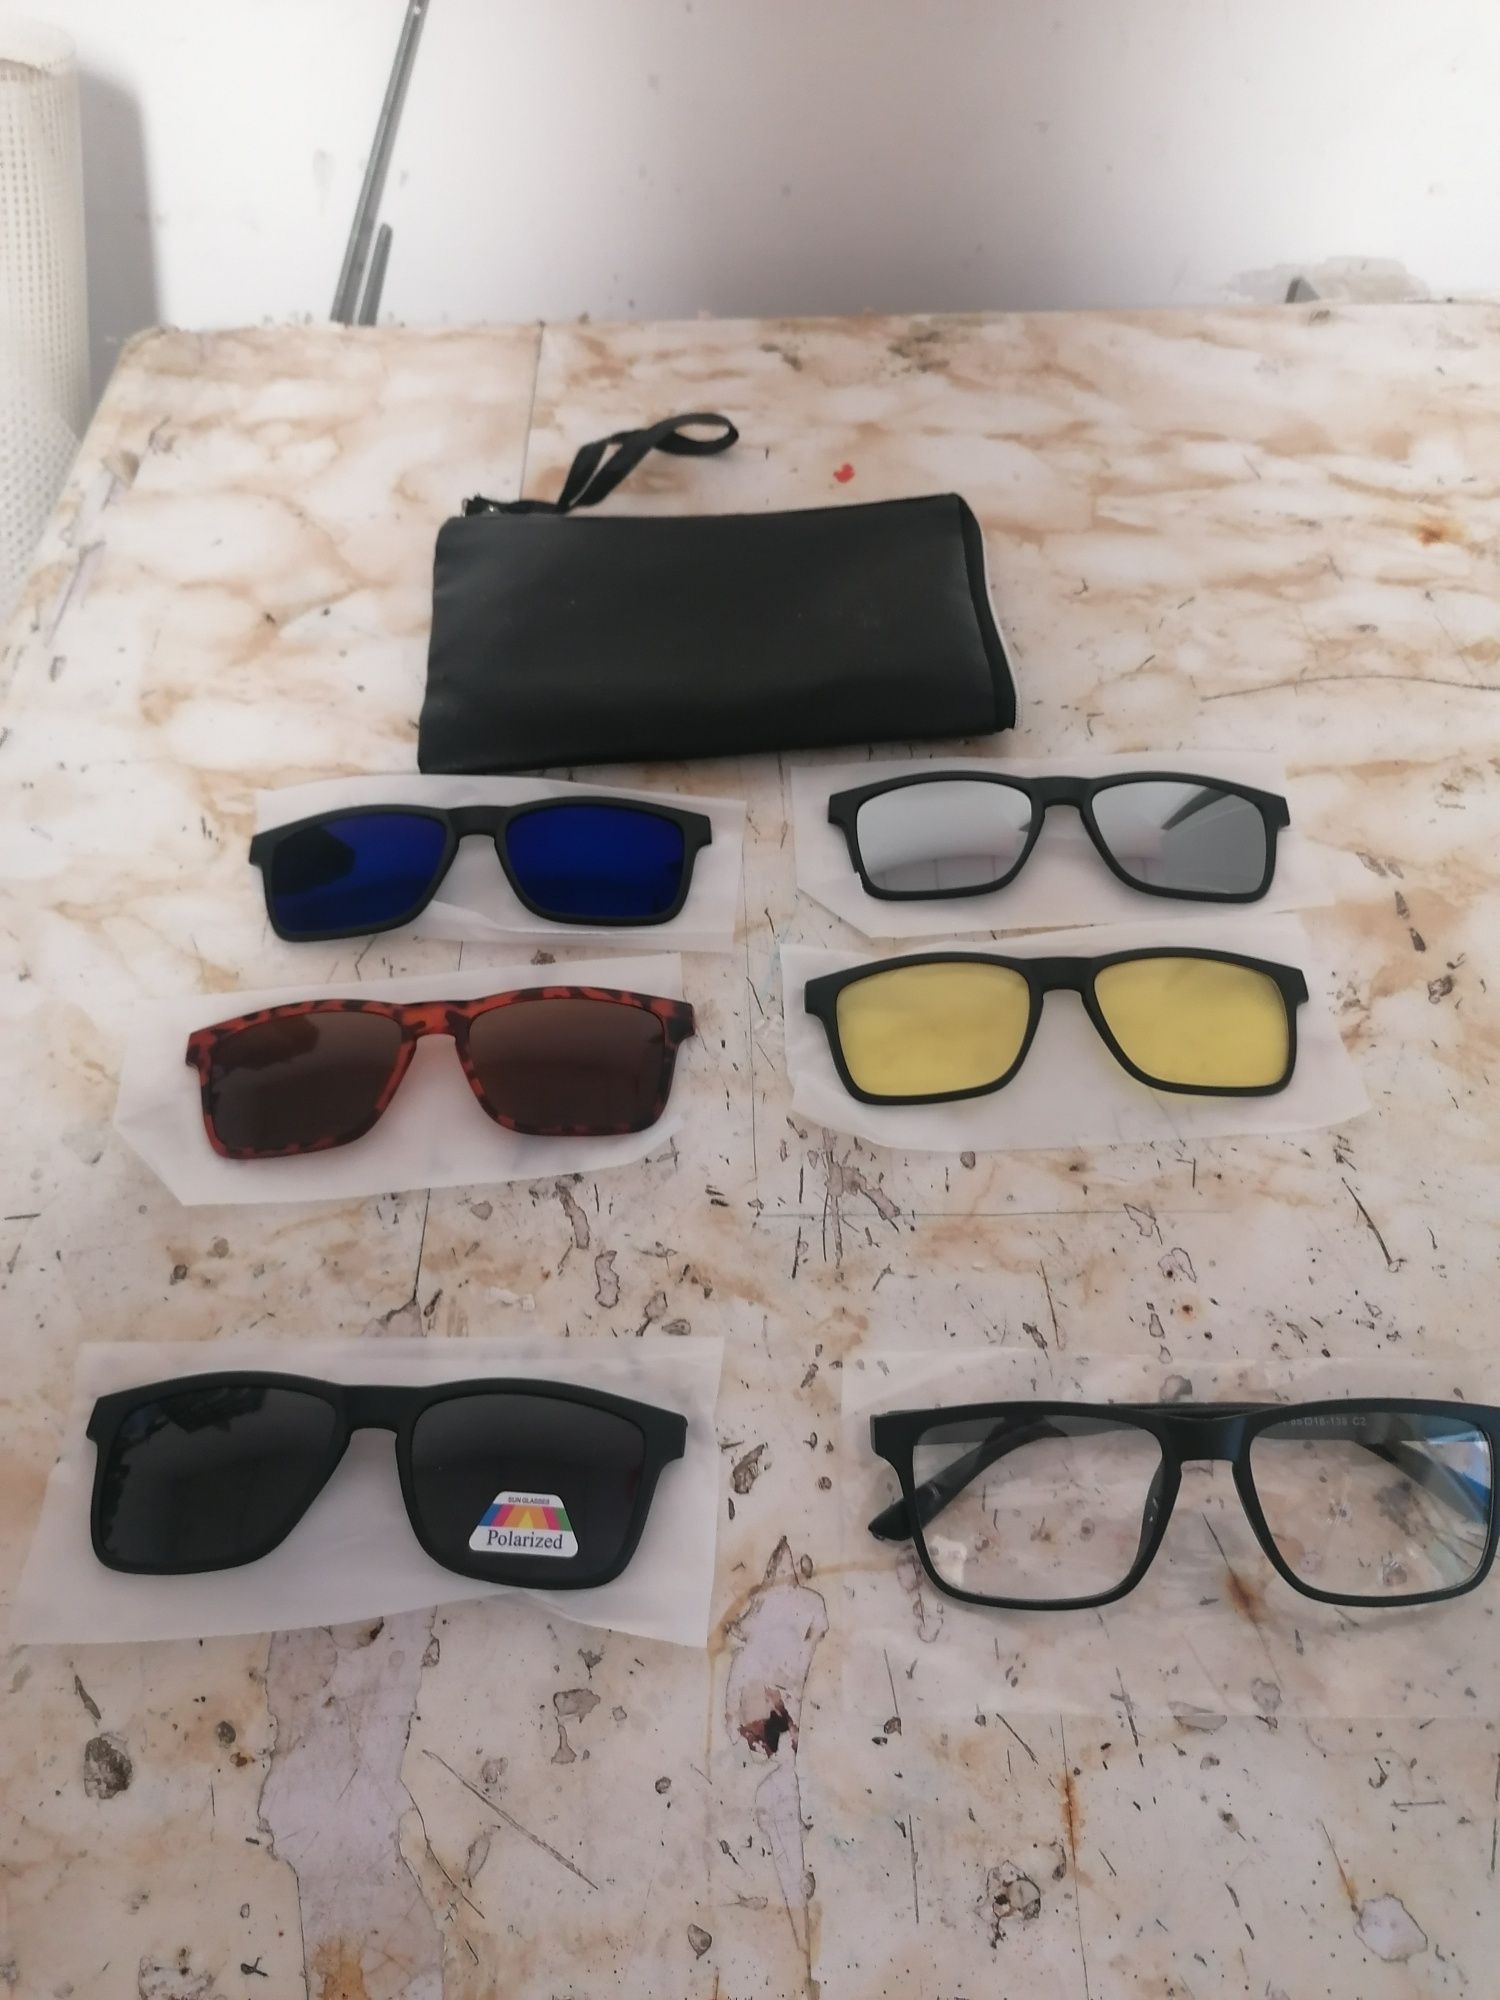 Óculos de sol com cinco diferentes tipos de lentes.
Entrego em mãos zo